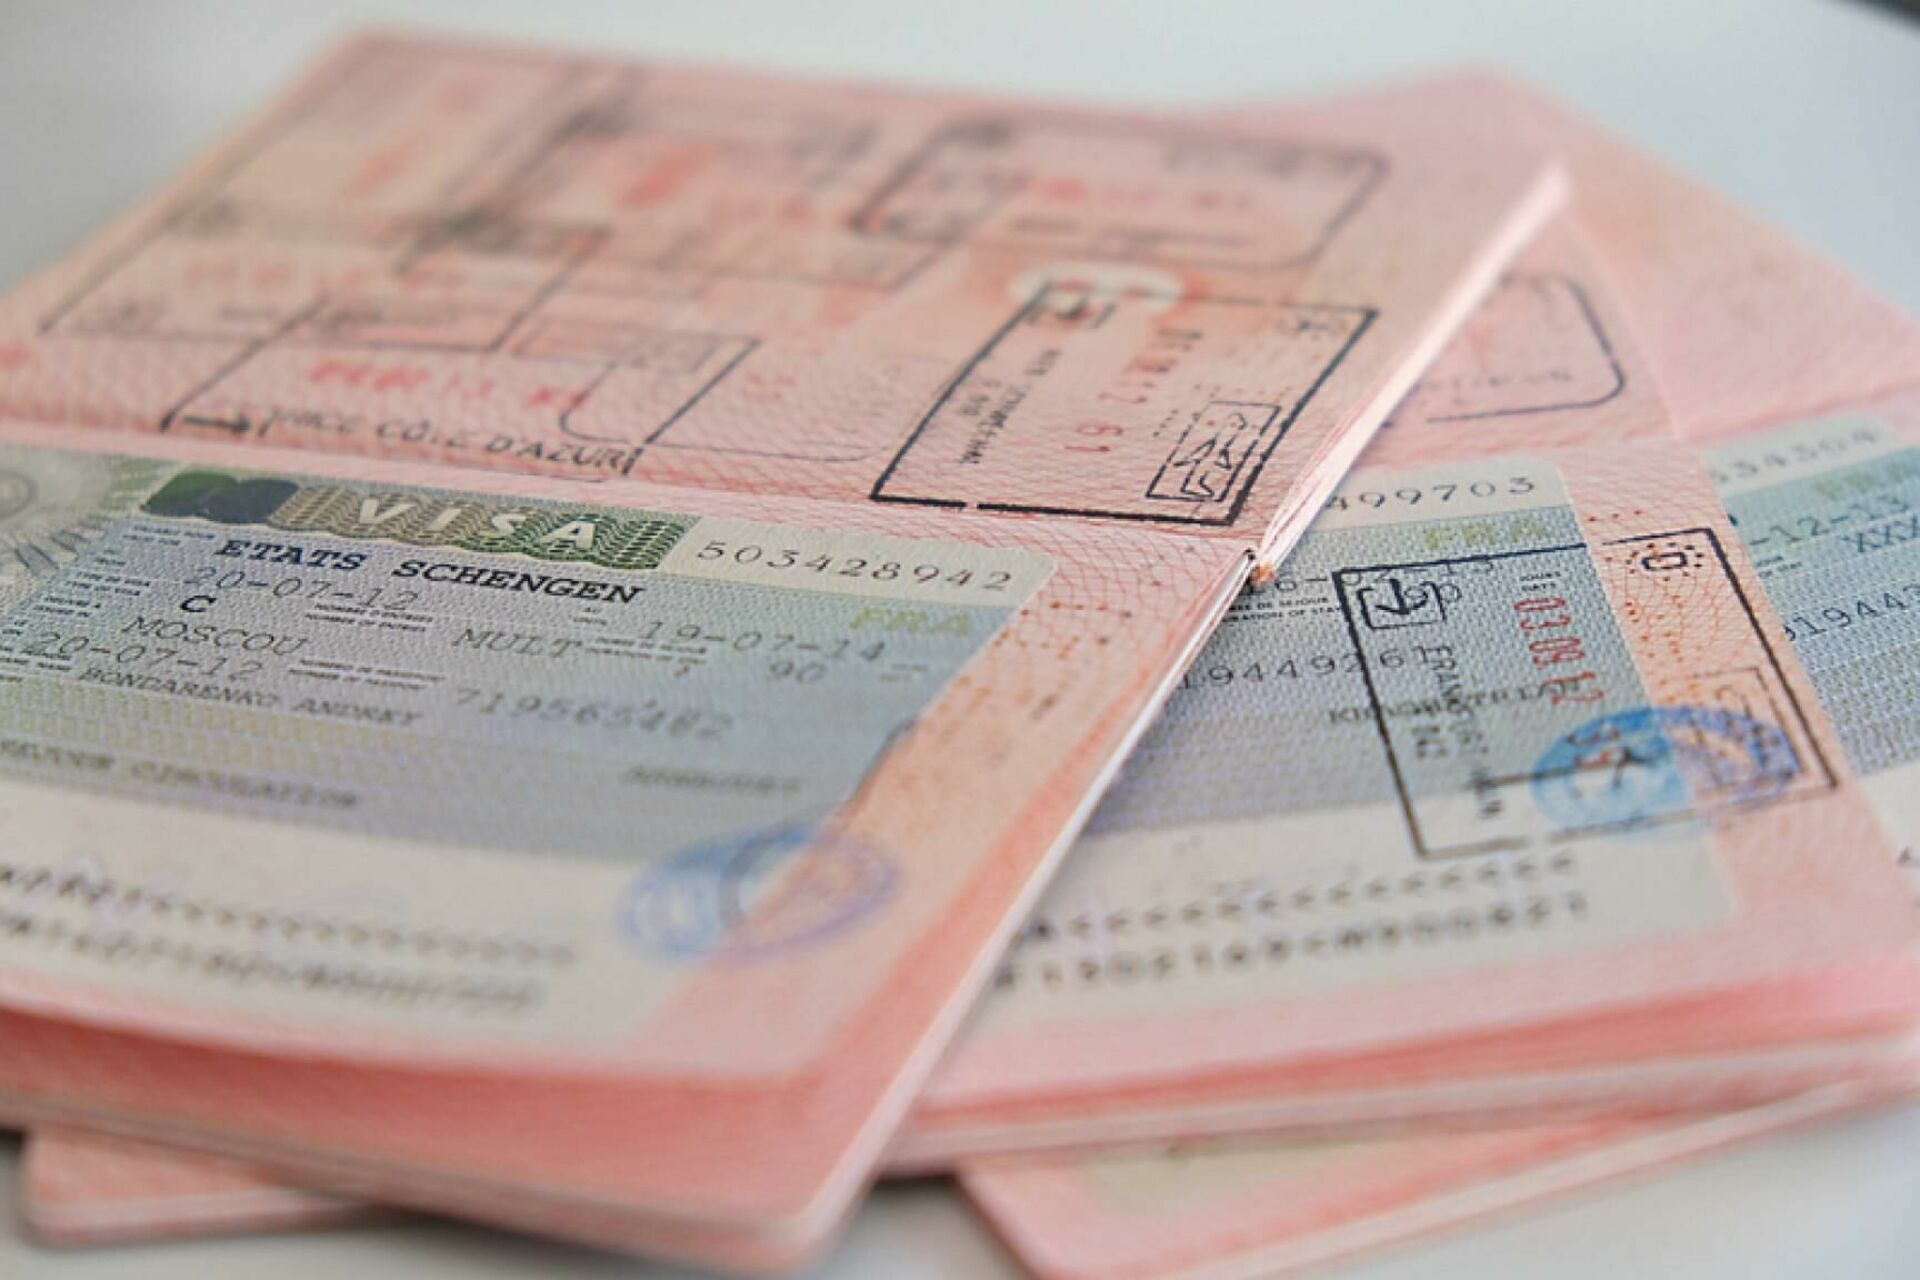 Страны выдающие шенгенские визы. Шенгенская виза. Шенгенская виза туристическая. Виза картинка. Паспортно-визовые формальности в туризме.